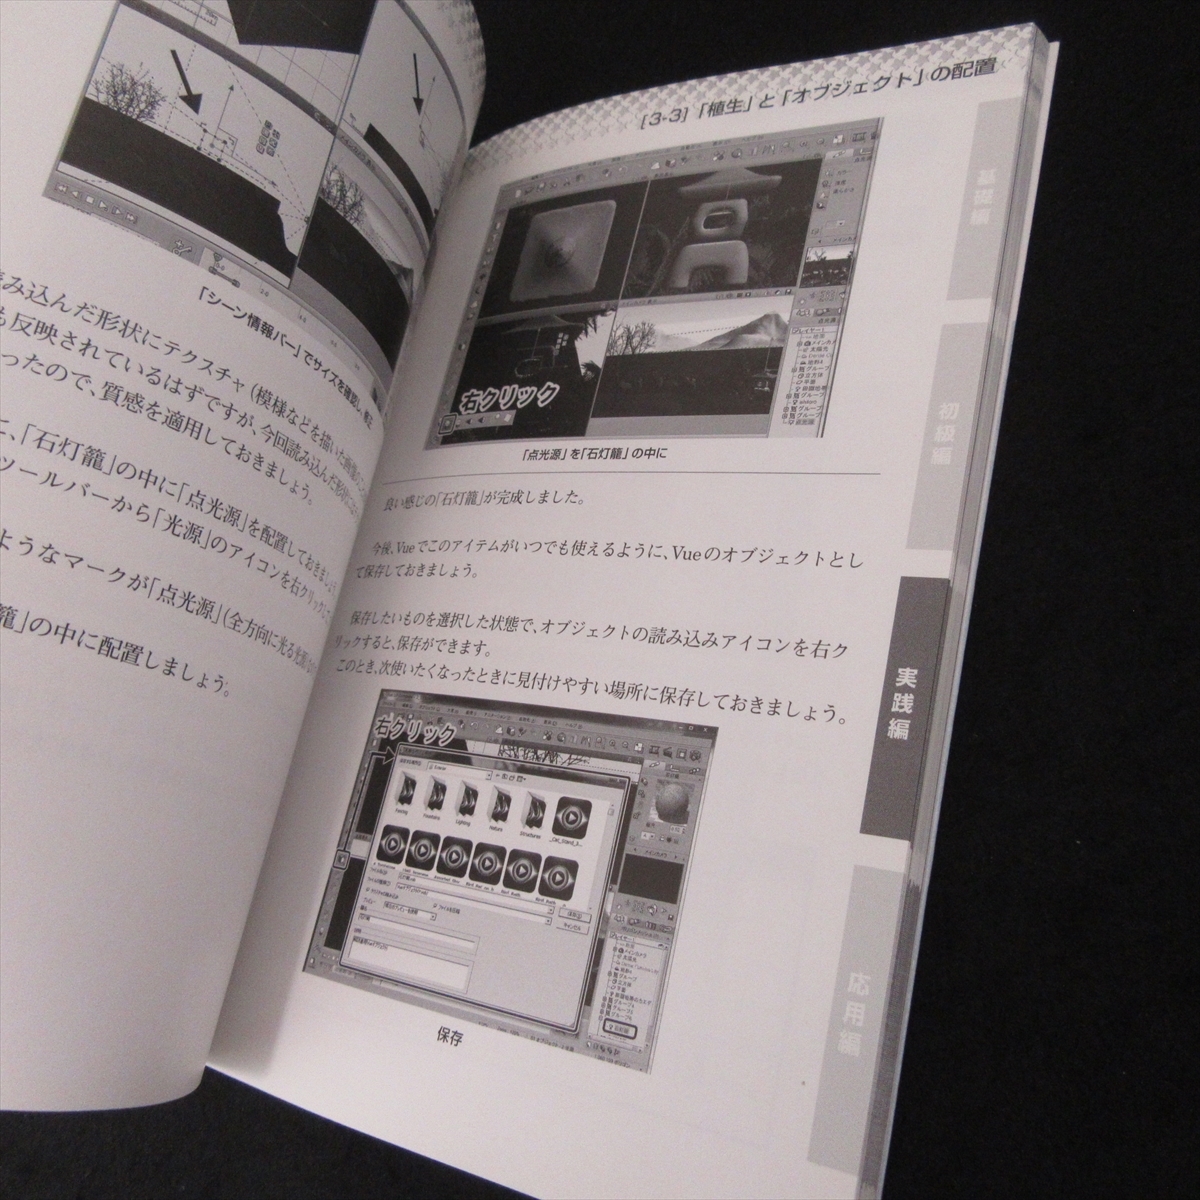  распроданный редкий книга@[Vue пейзаж CG technique гид ] # отправка 185 иен ... прекрасный . инженерия фирма 3D CG городской пейзаж изготовление soft [Vue]. способ применения I*O BOOKS *